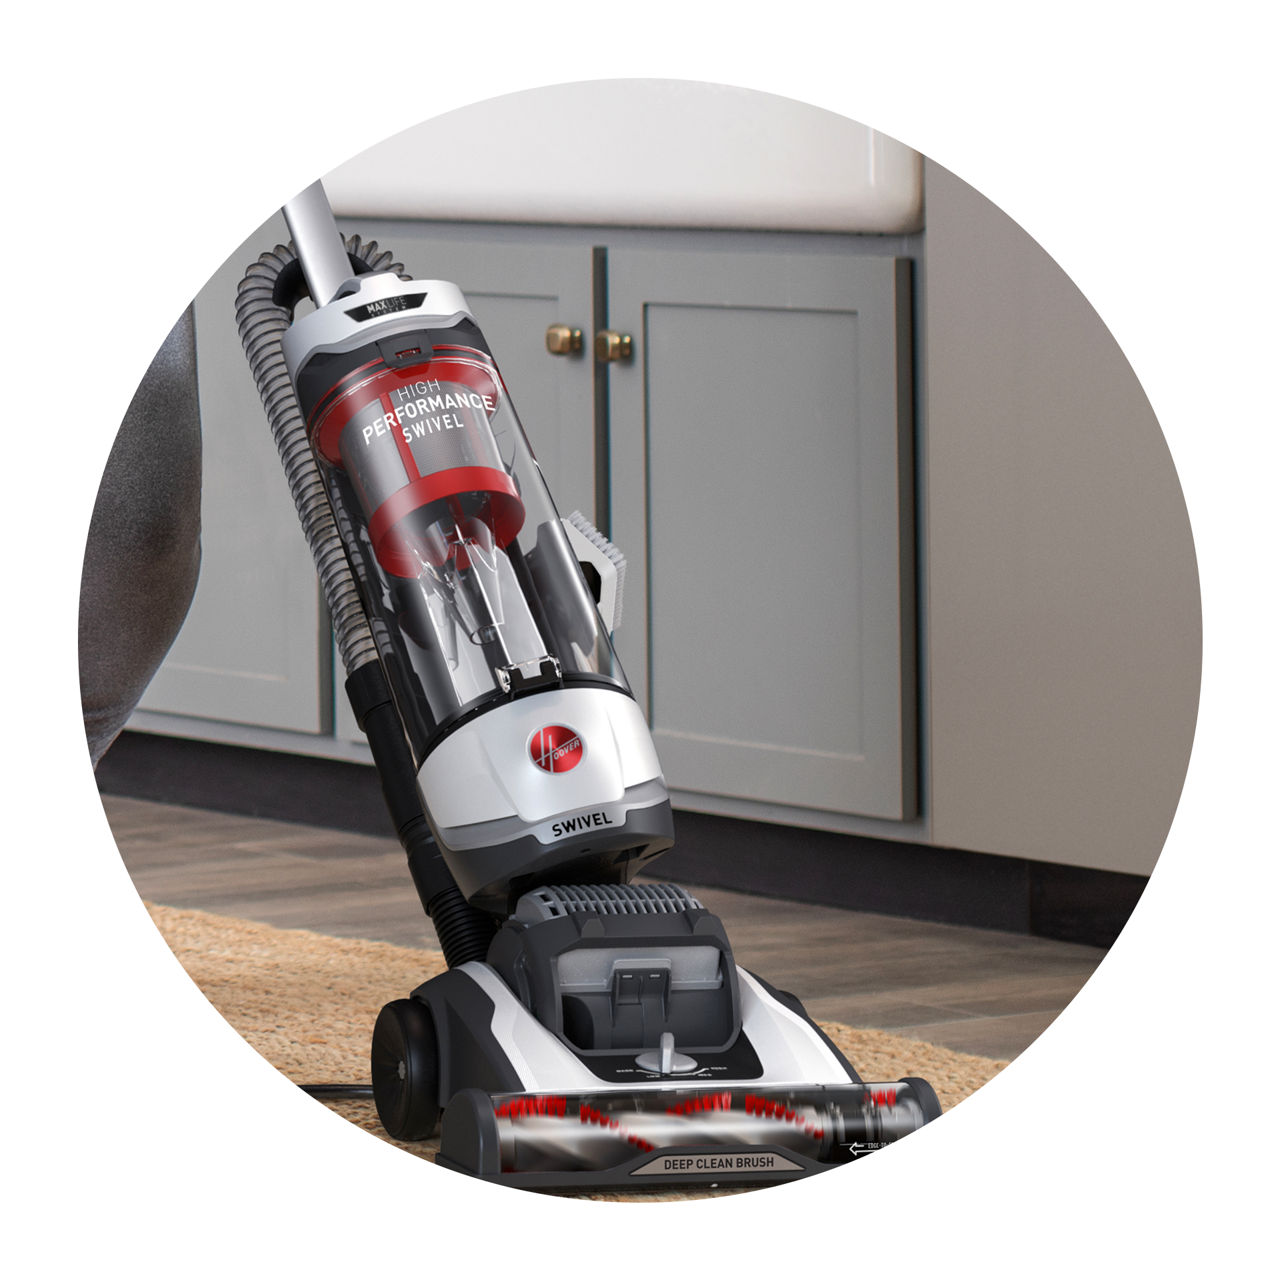 Vacuums & Floor Cleaning